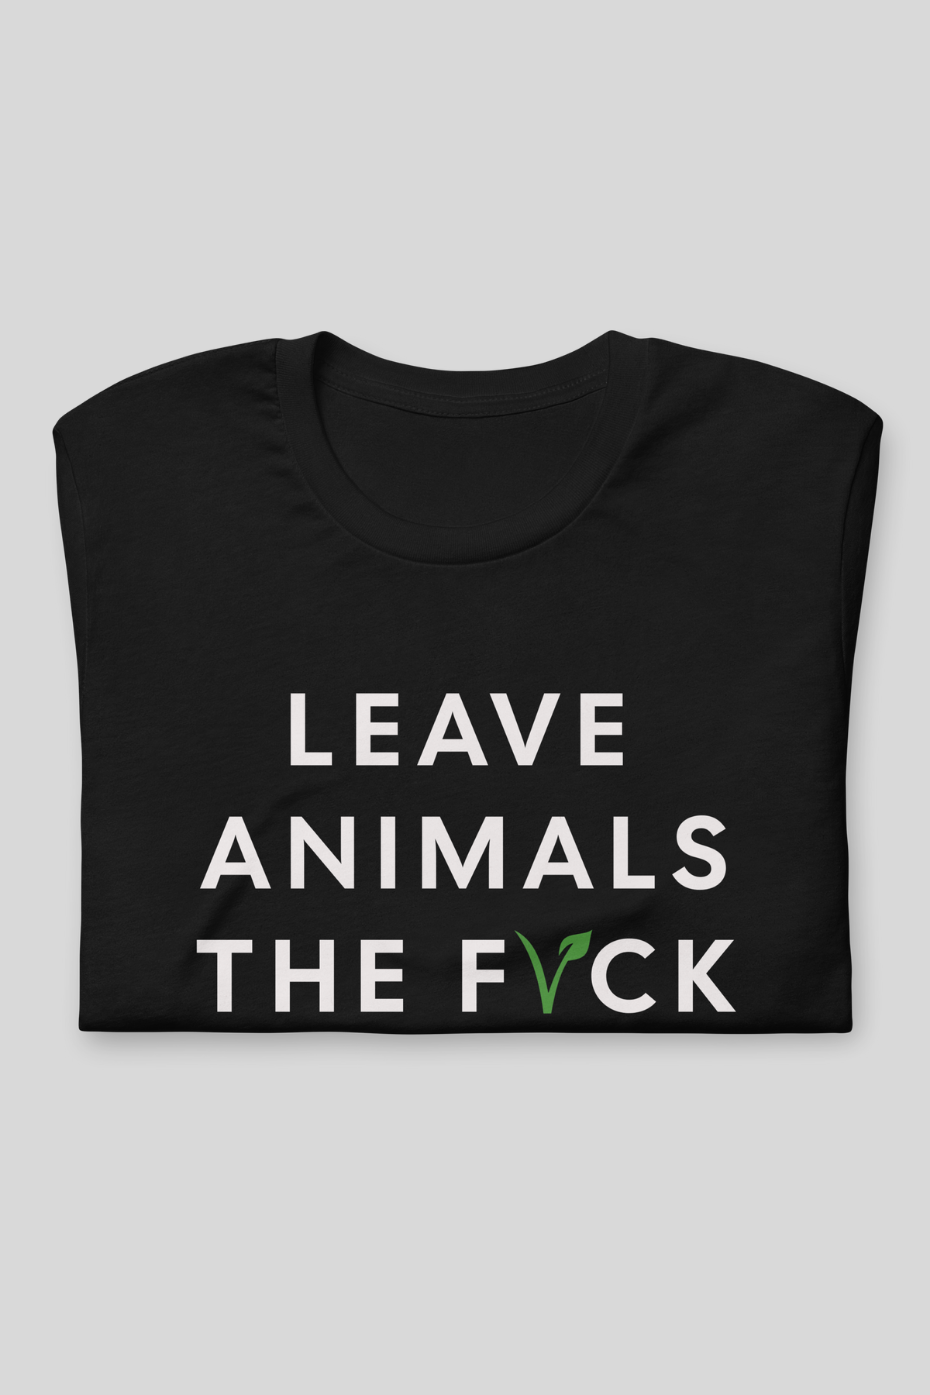 Leave Animals Alone -  Unisex Basic Softstyle T-Shirt